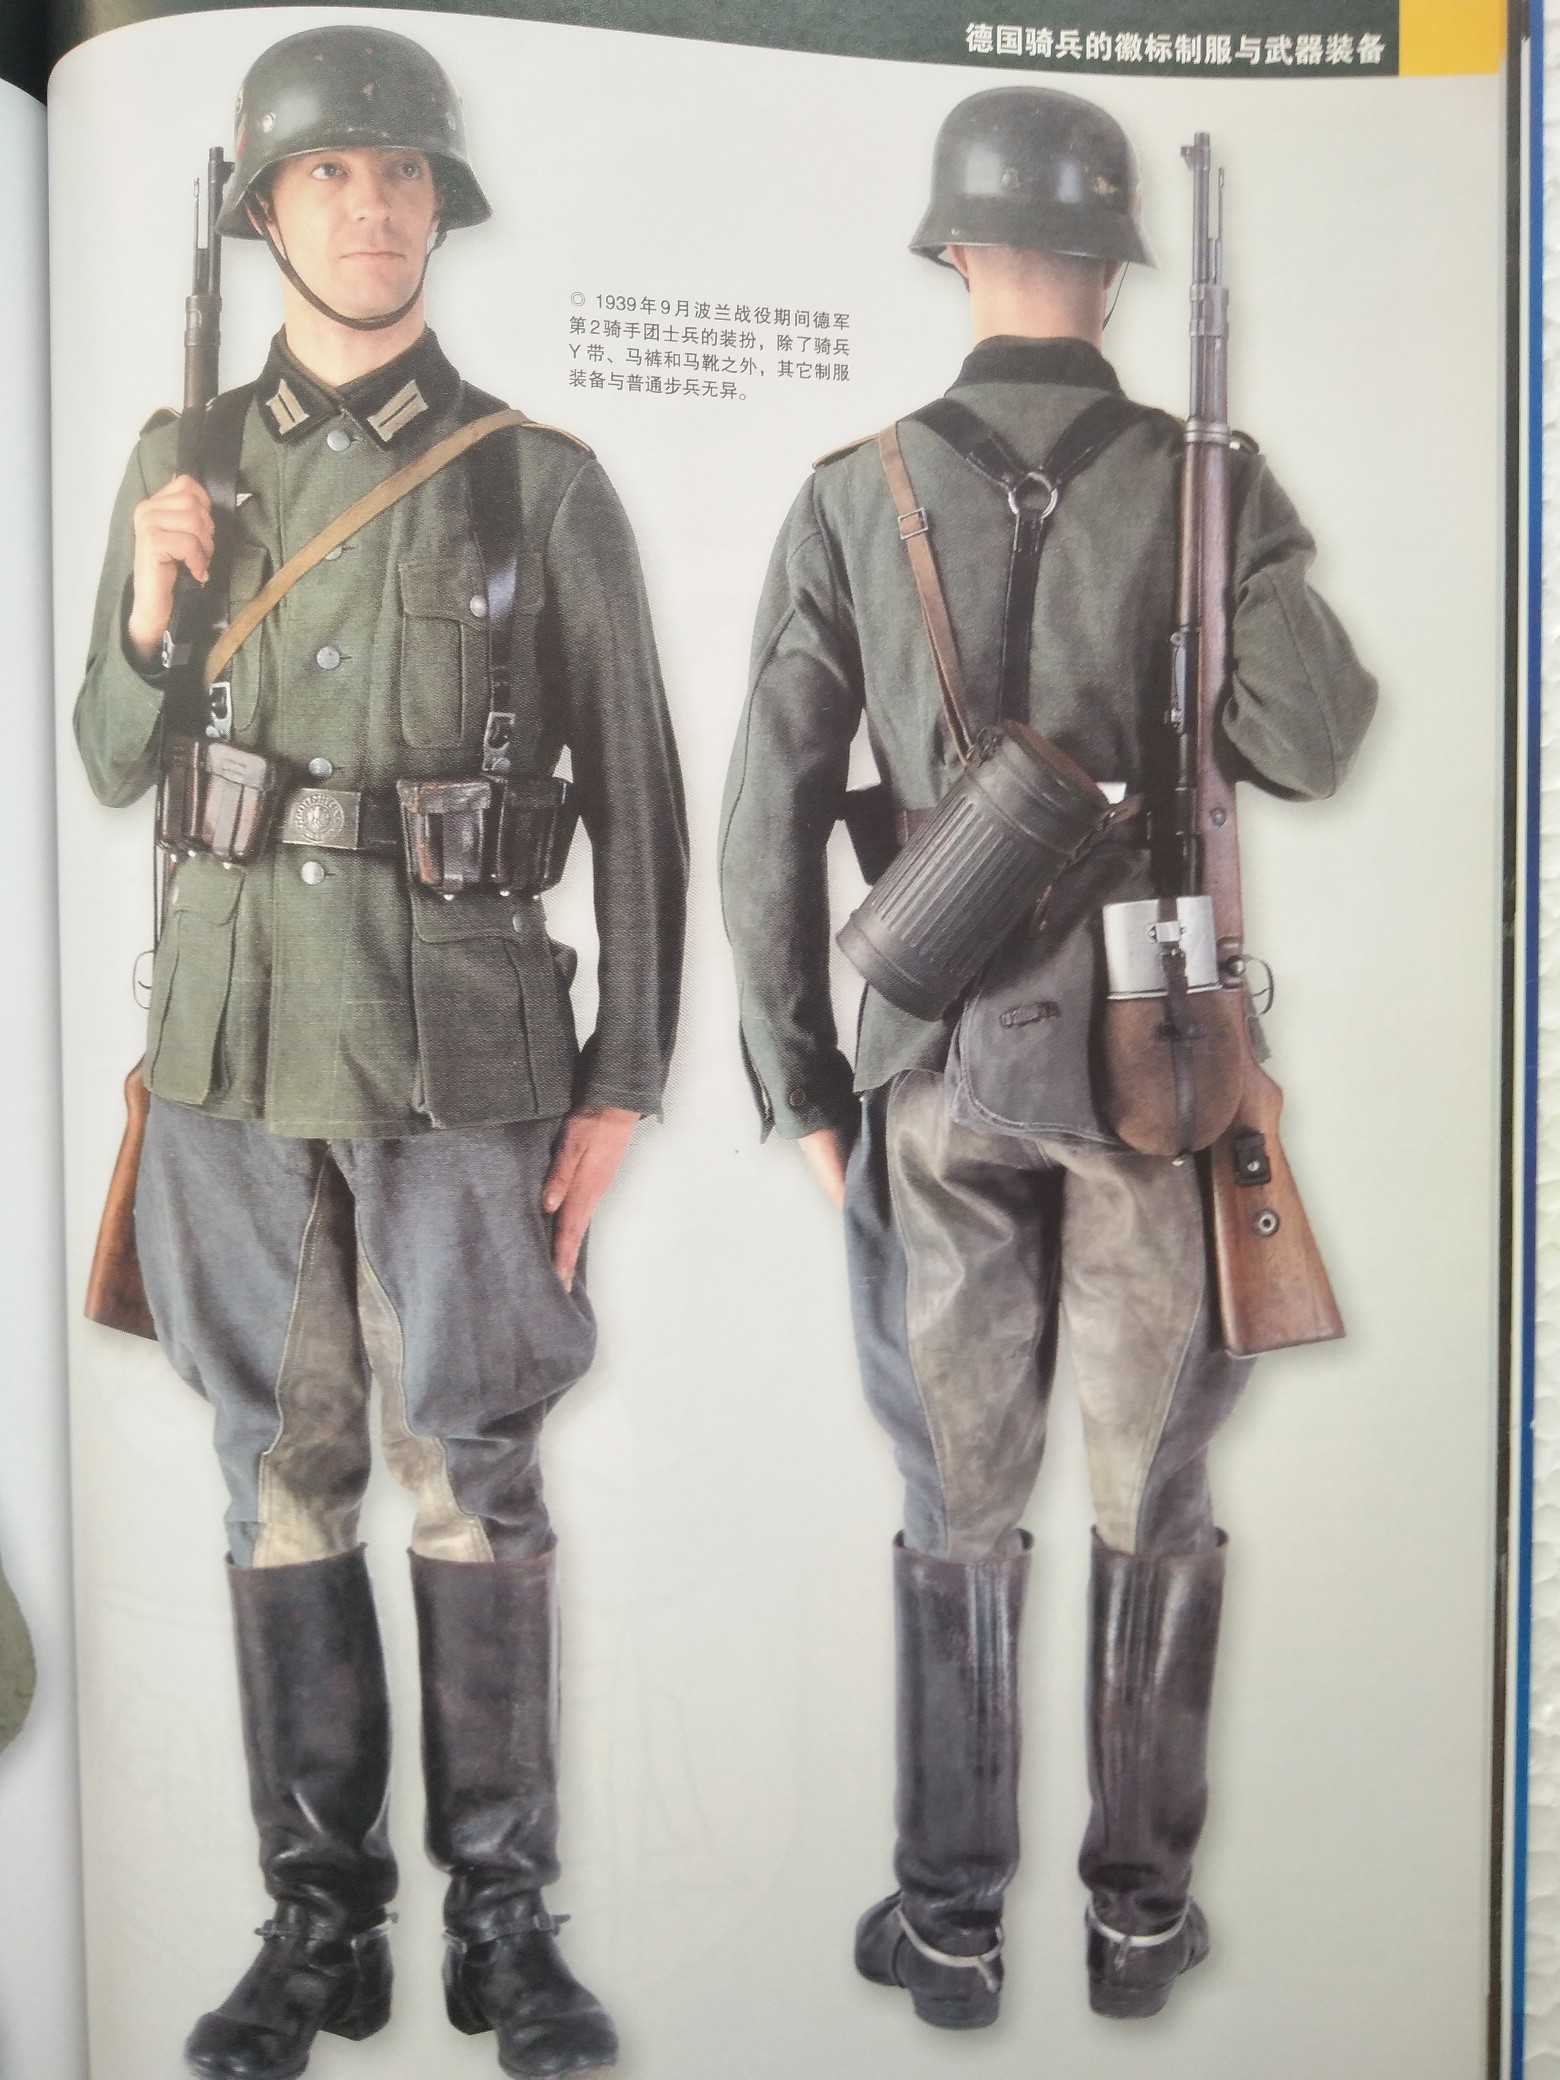 马背上的原野灰—二战德军骑兵部队徽标制服与武器装备